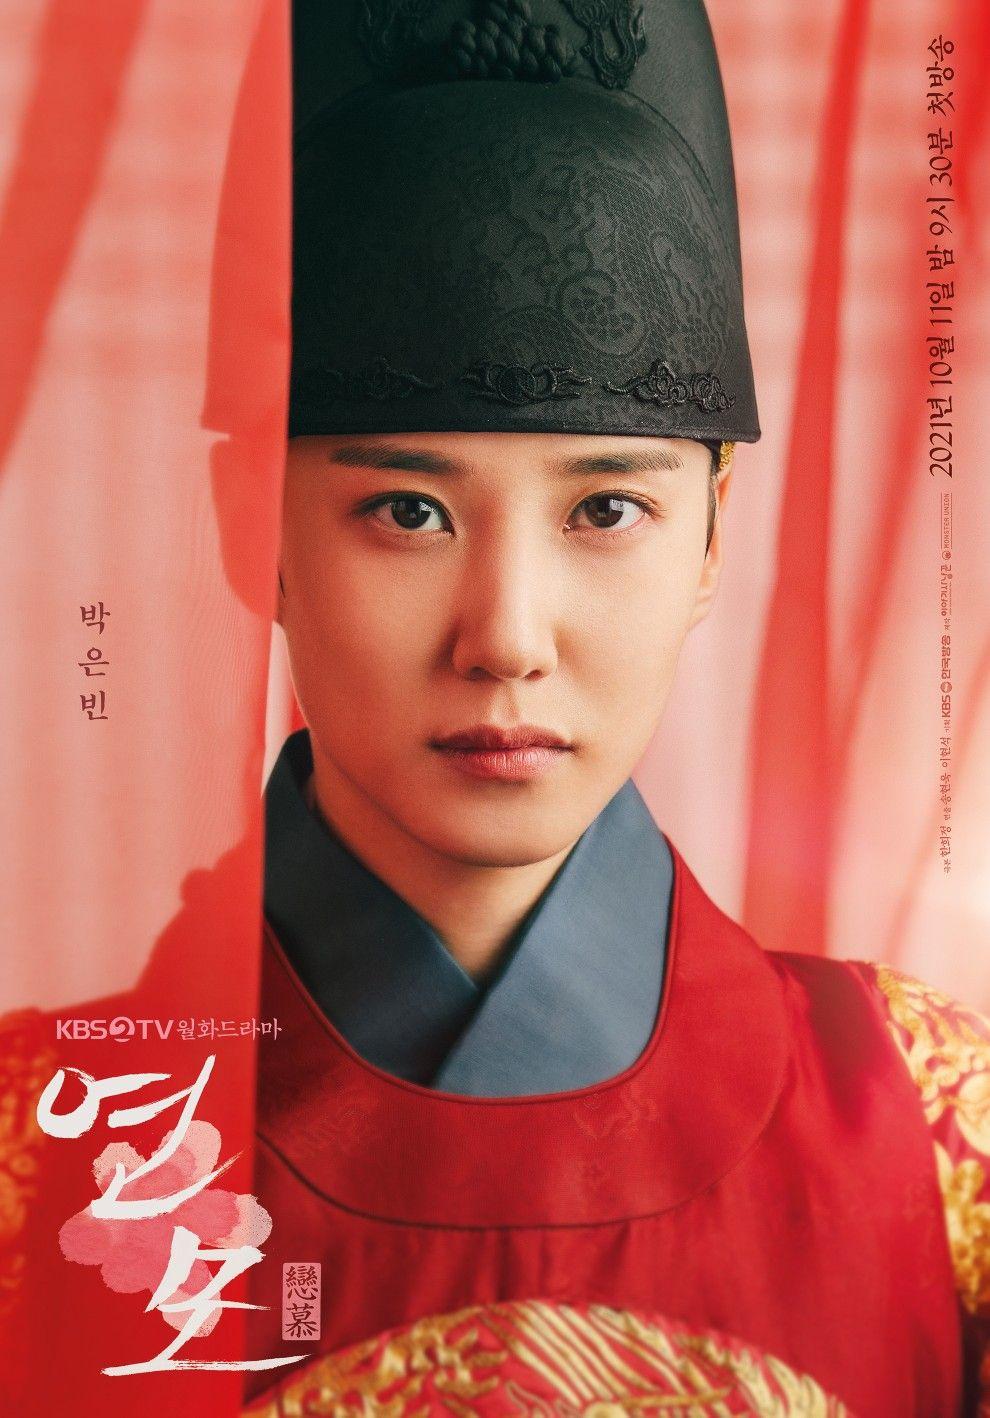 รีวิวซีรีย์เกาหลีเรื่อง The King’s Affection  ราชันผู้งดงาม1